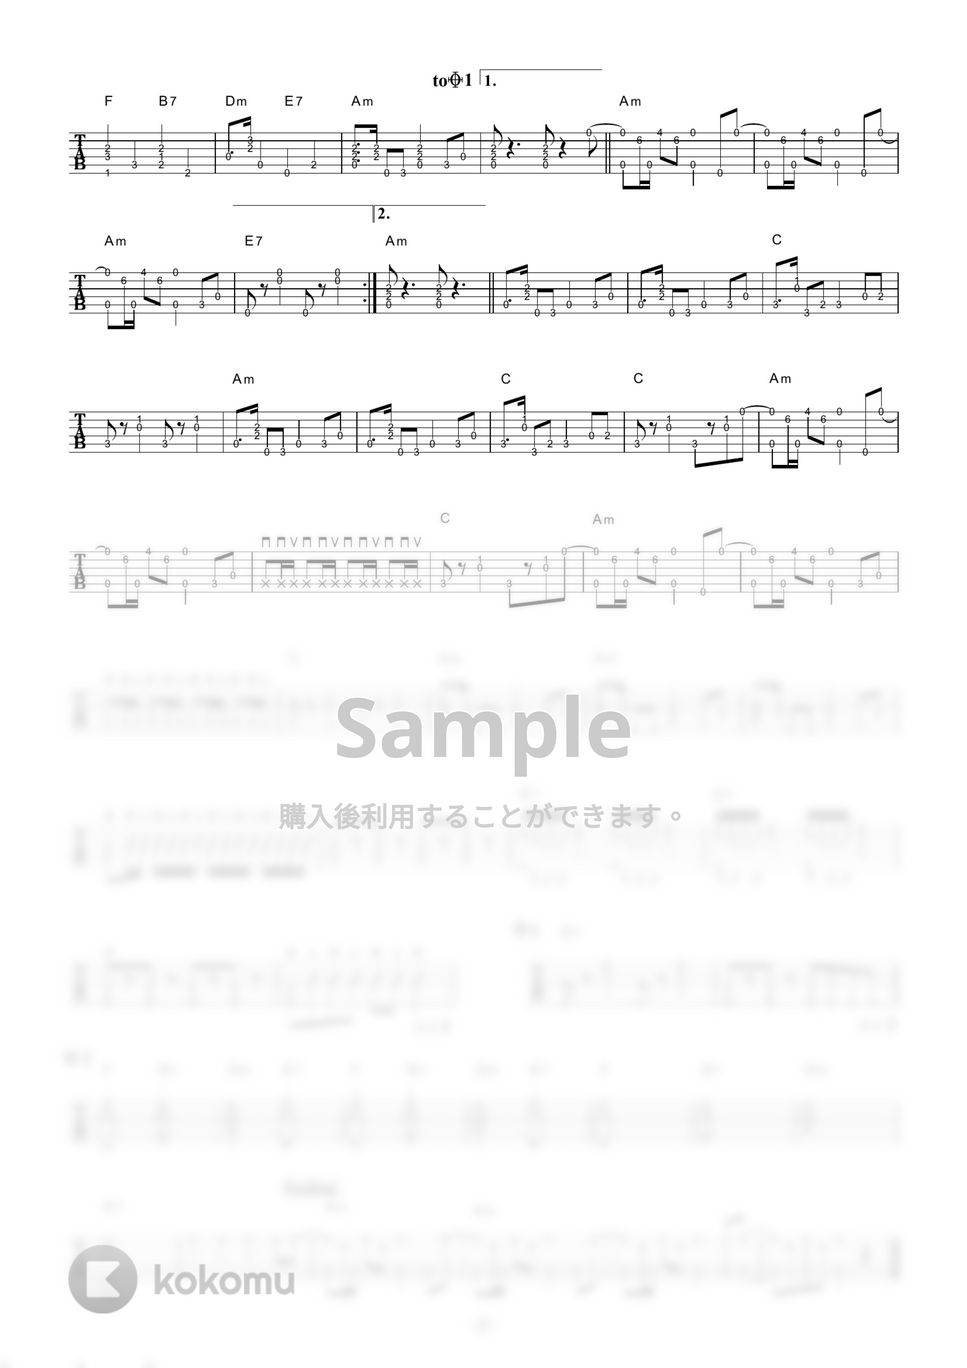 モーニング娘。 - 恋のダンスサイト (ギター伴奏/イントロ・間奏ソロギター) by 伴奏屋TAB譜